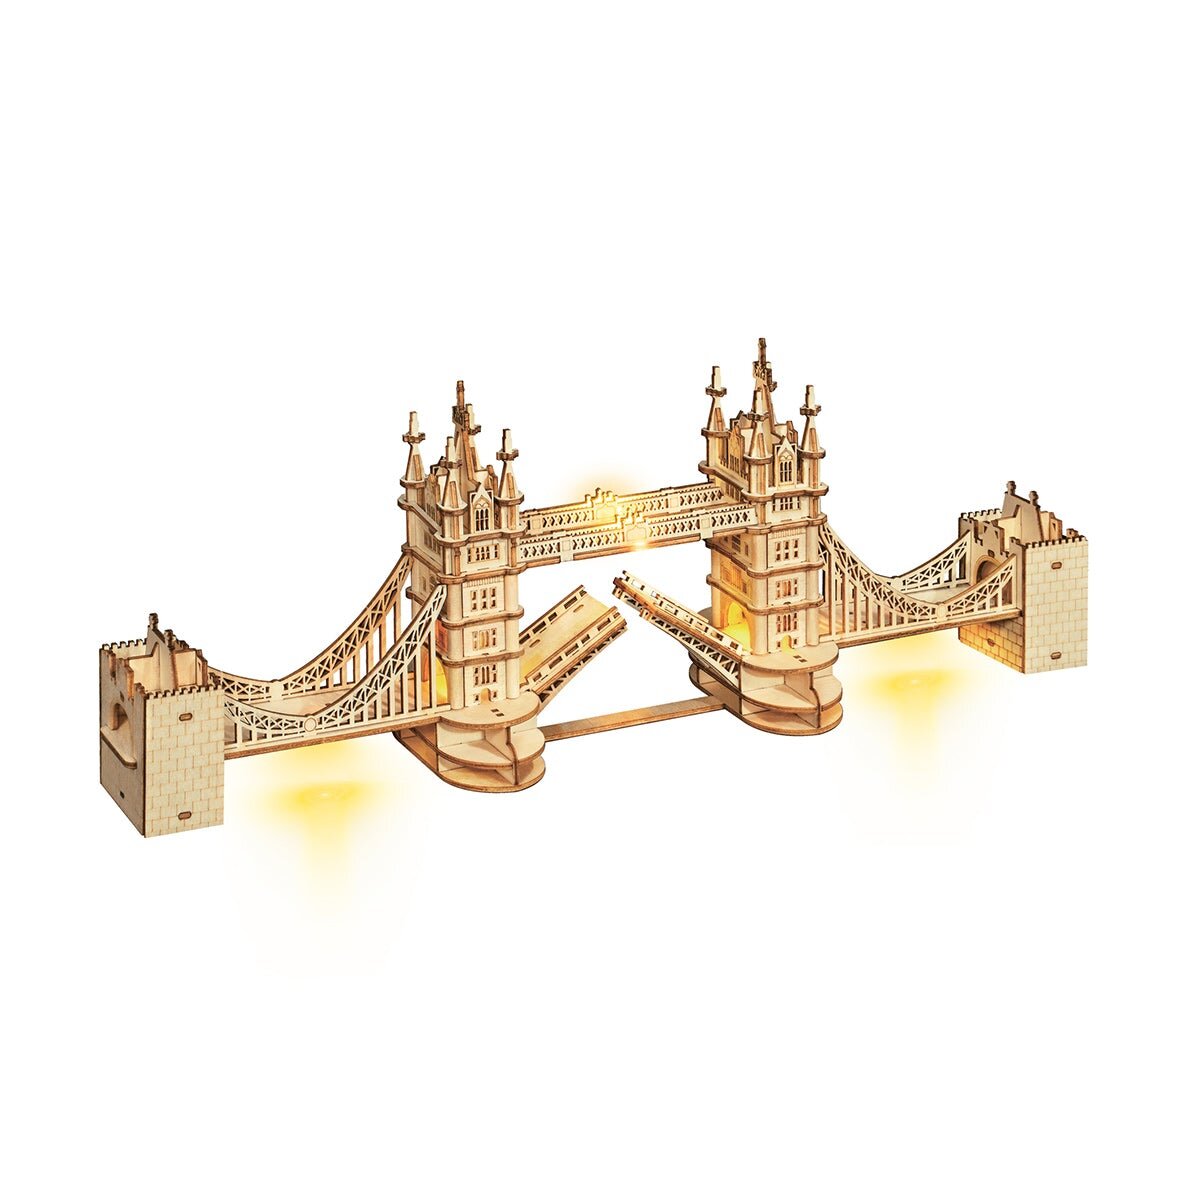 Ξύλινο τρισδιάστατο παζλ - μοντέλο Tower Bridge με φωτισμό LED Rolife TG412